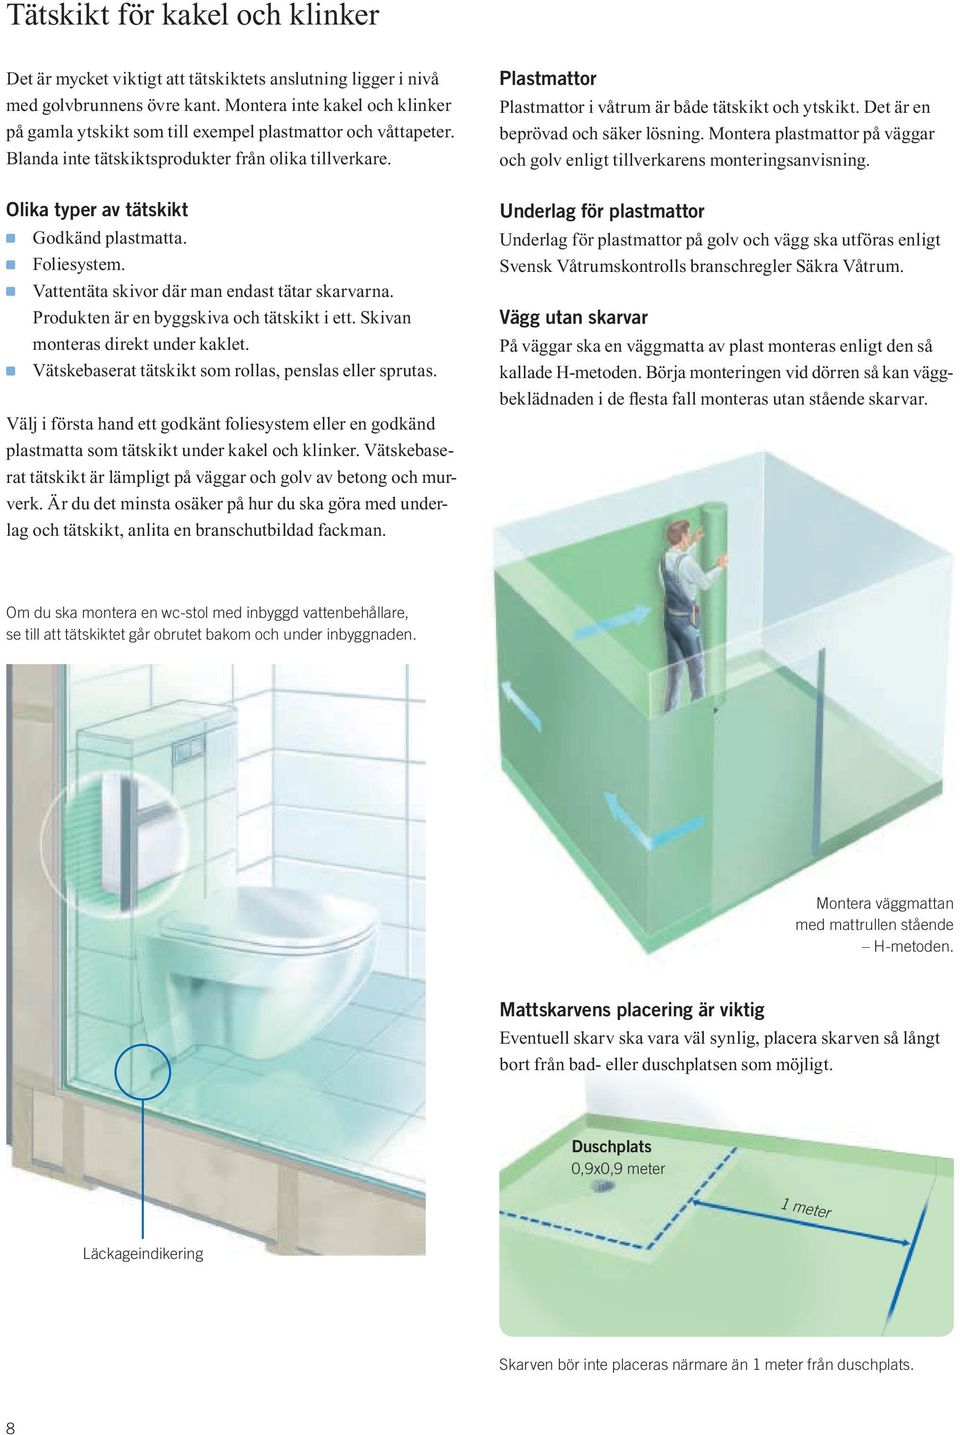 Bygg bort vattenskadorna i din bostad. En teknisk vägledning till säkert  byggande. - PDF Free Download